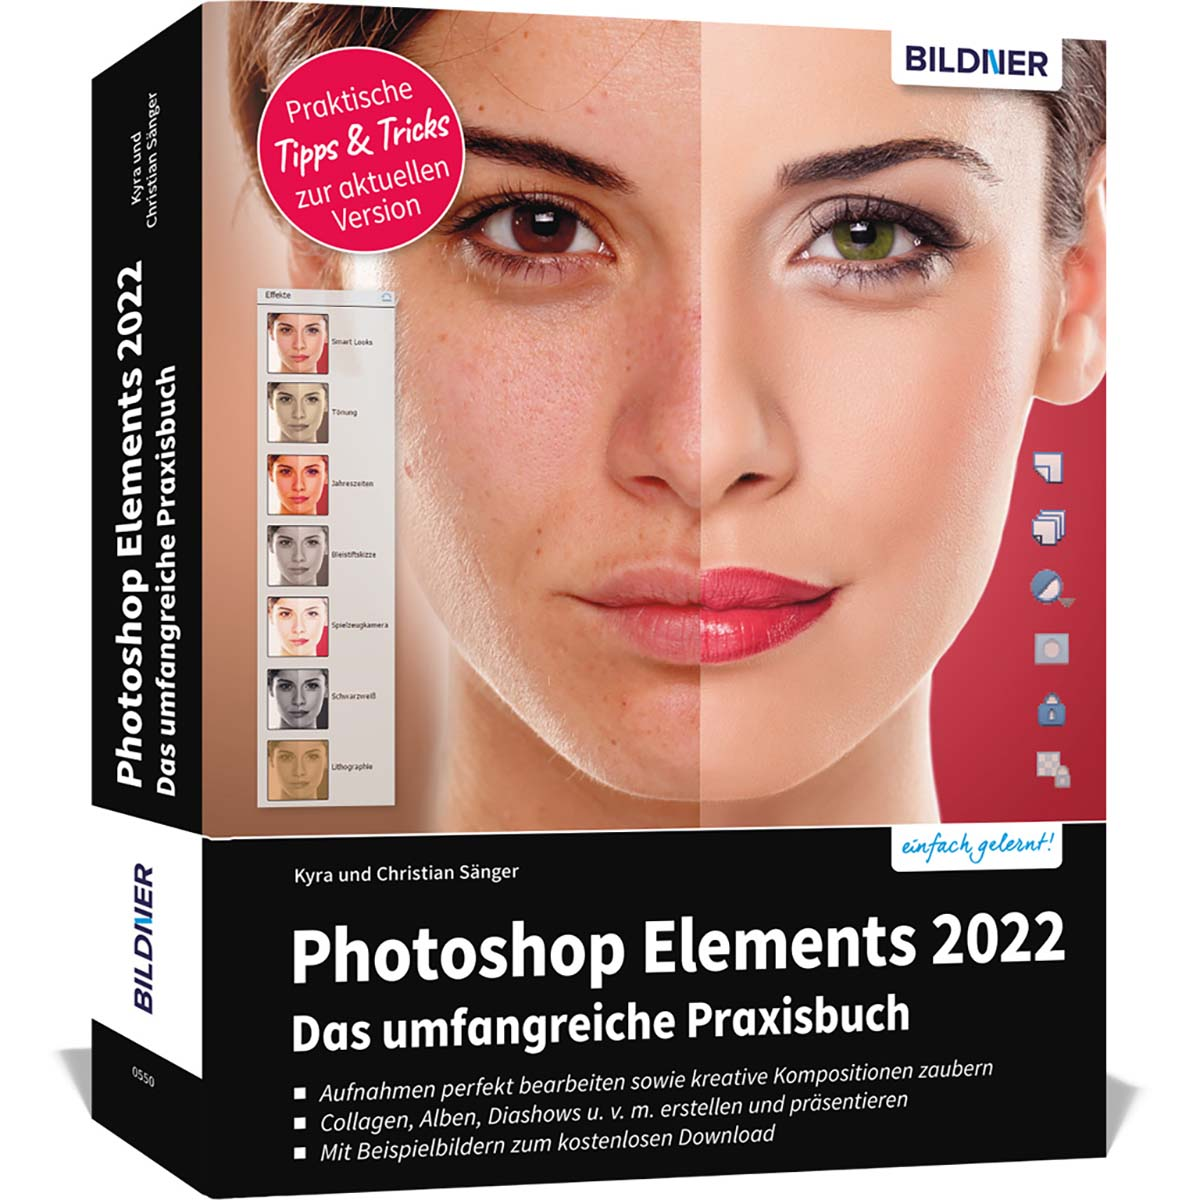 Das Photoshop Elements umfangreiche 2022 Praxisbuch! -